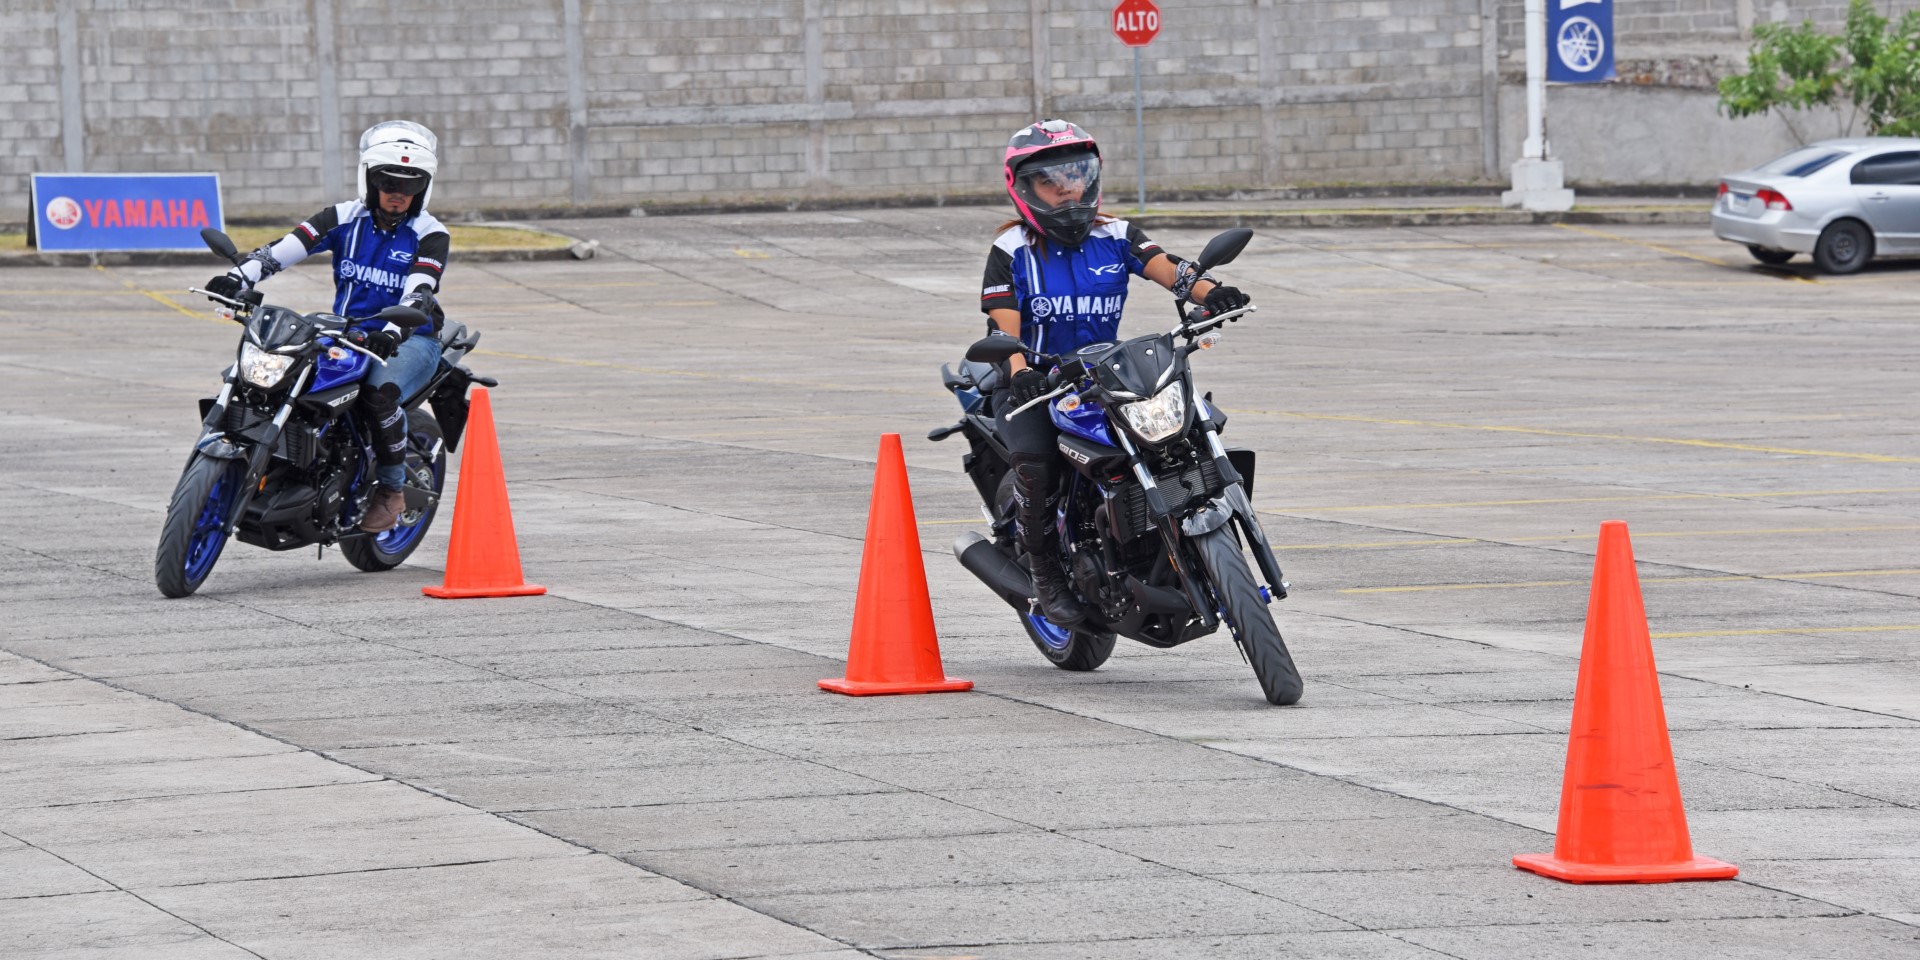 Yamaha Honduras abre la primera escuela de manejo para motociclistas en el país